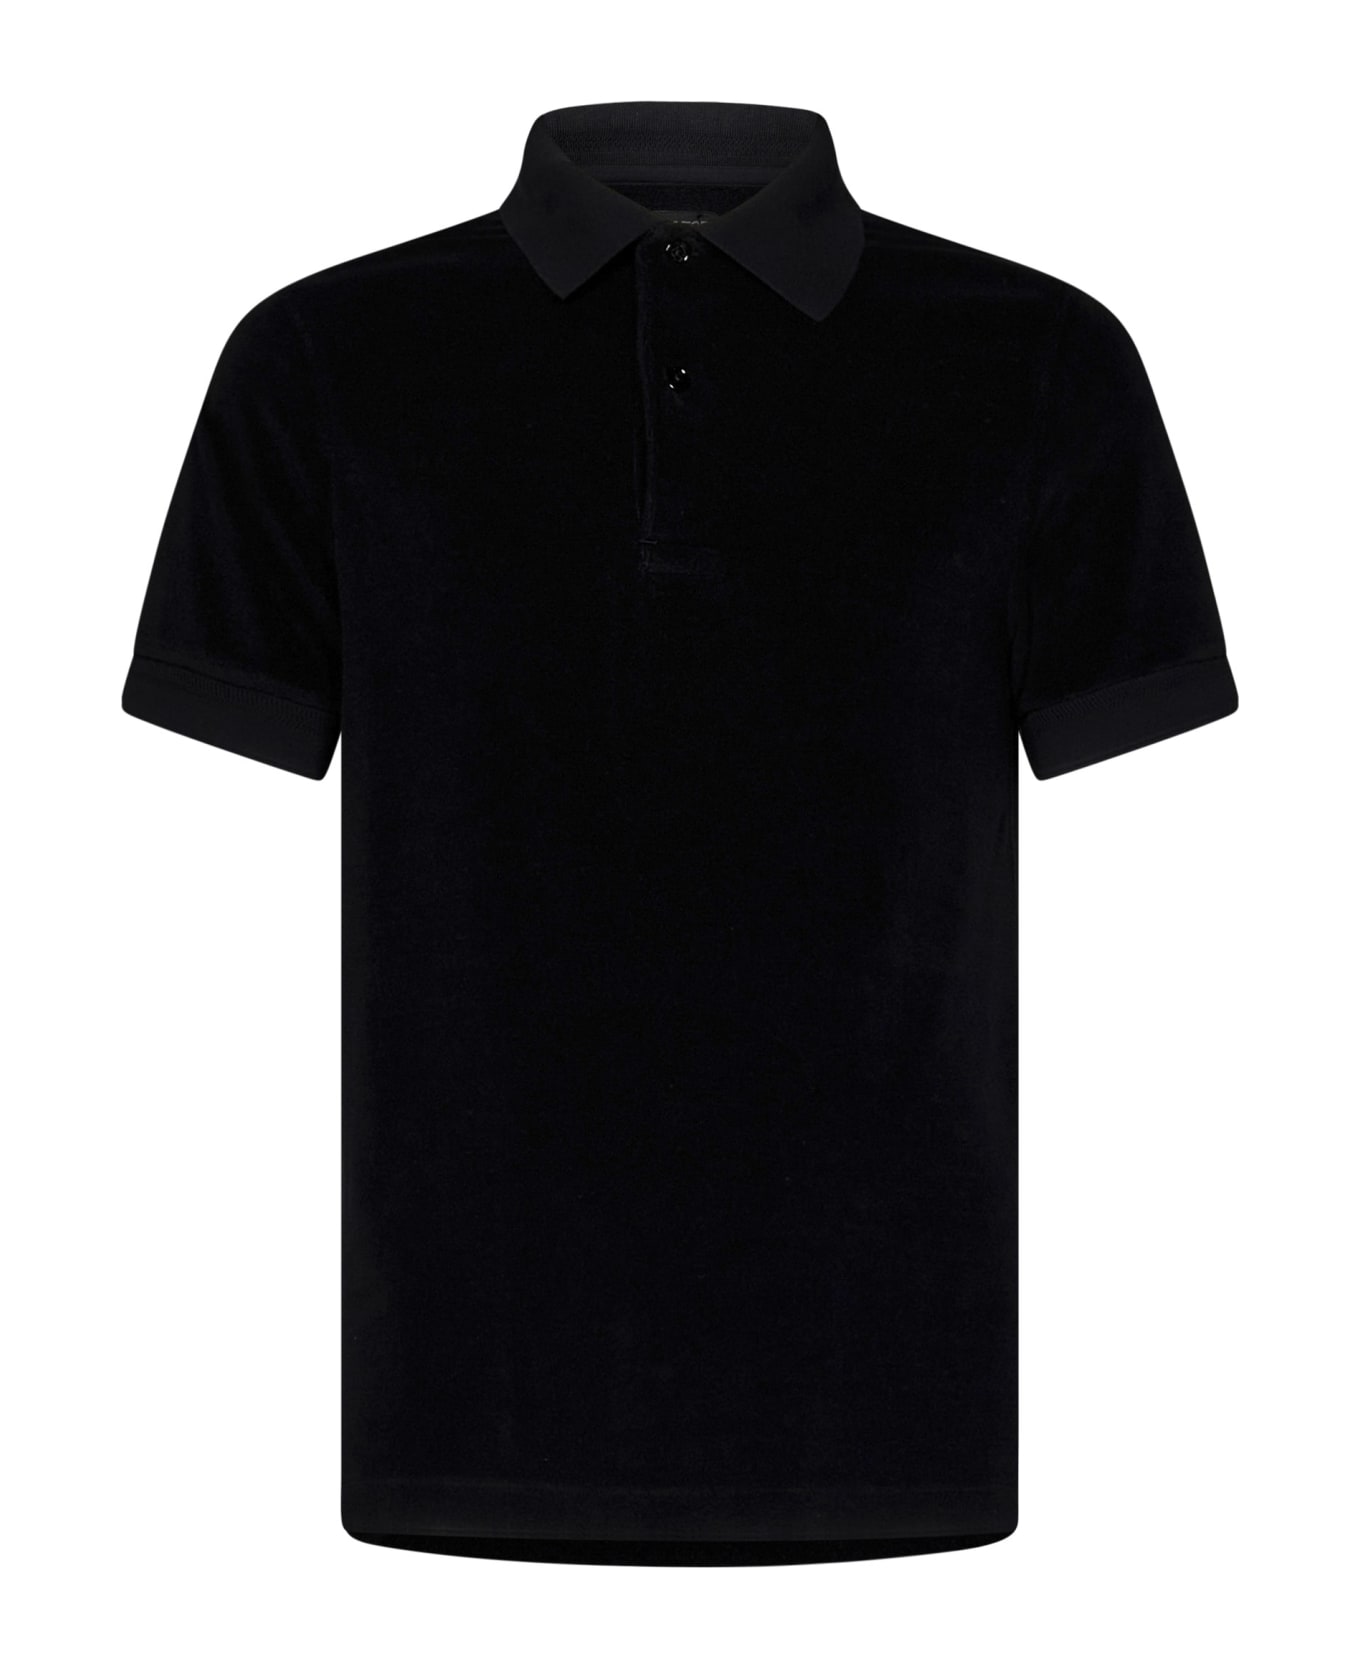 Tom Ford Polo Shirt - Black